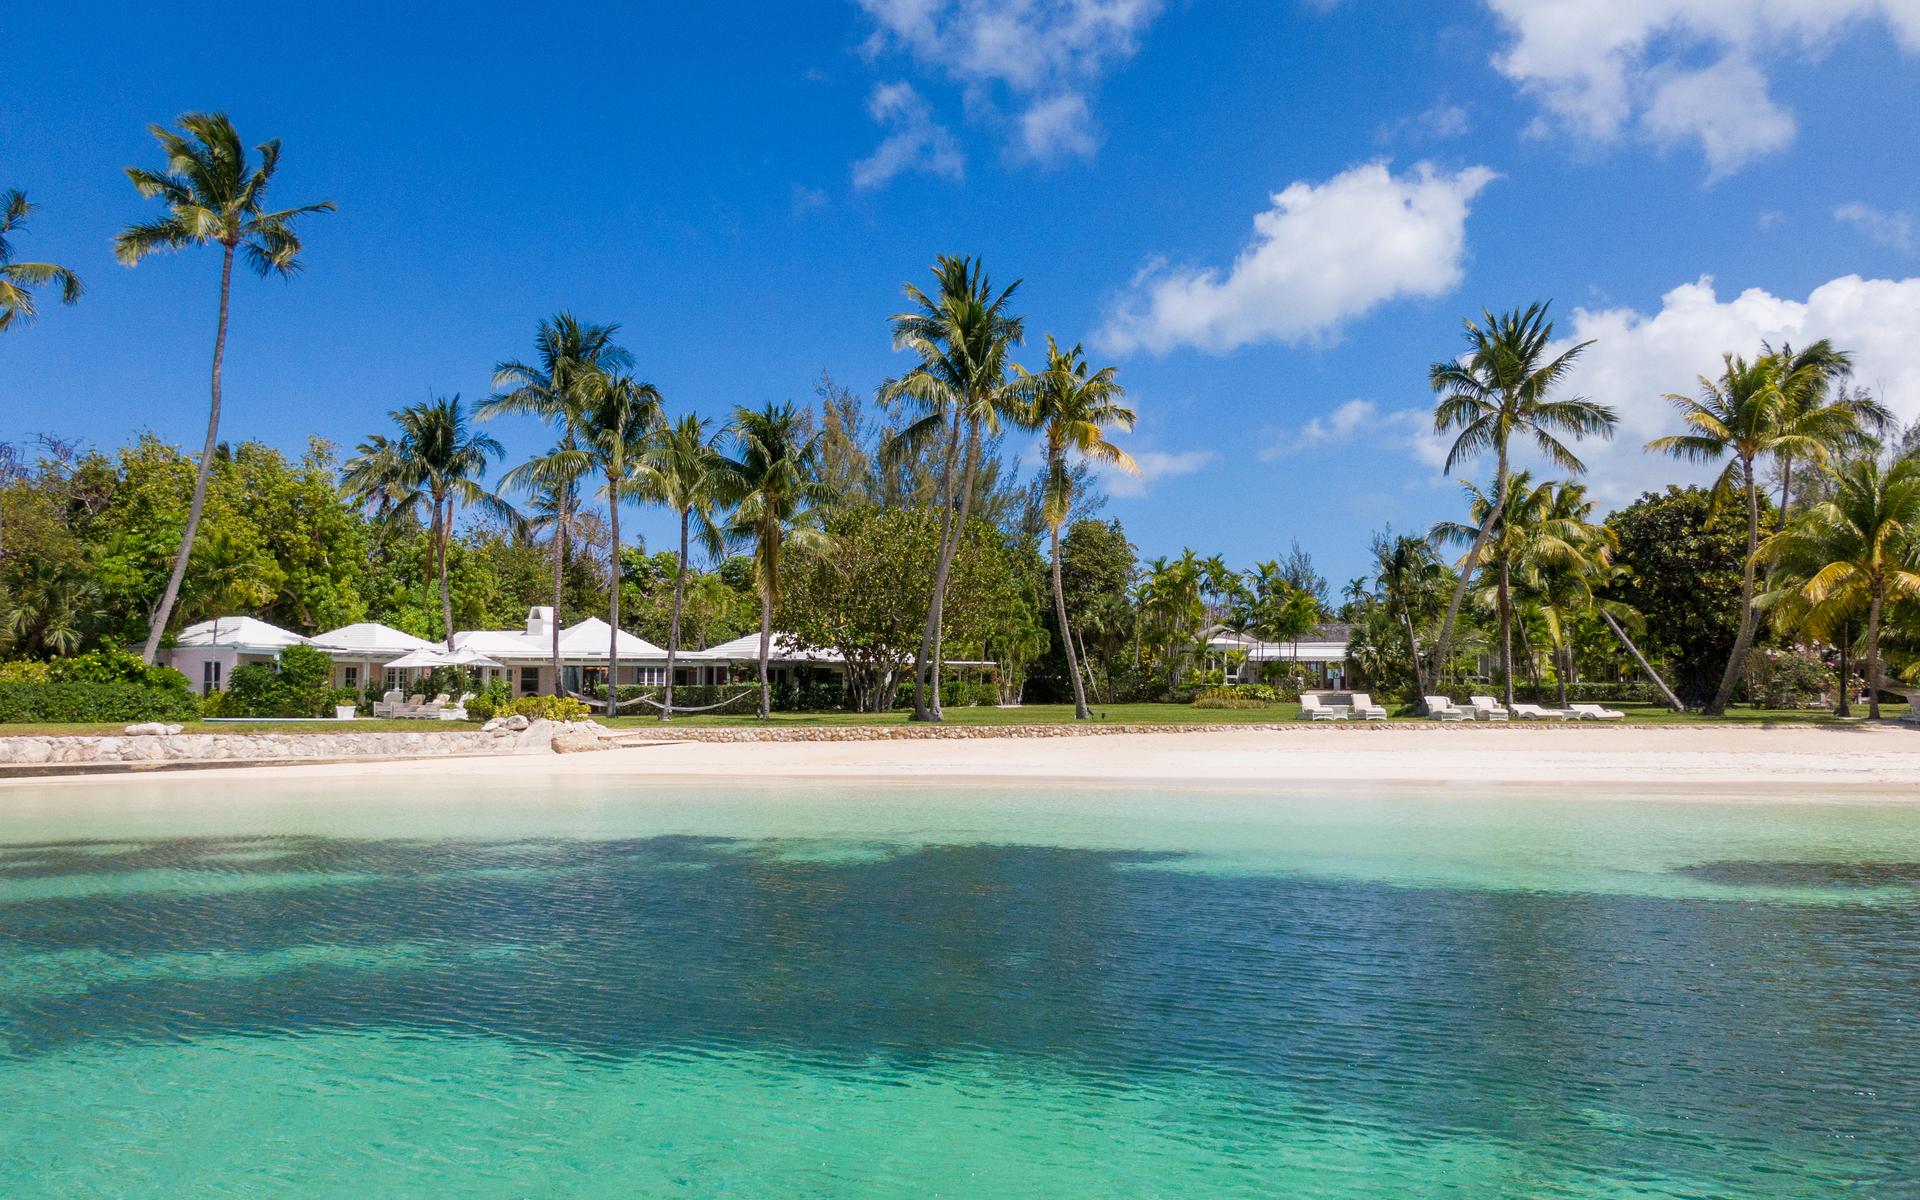 Bostaden ligger bara några steg i från den privata stranden där man kan ligga under en palm för skugga.